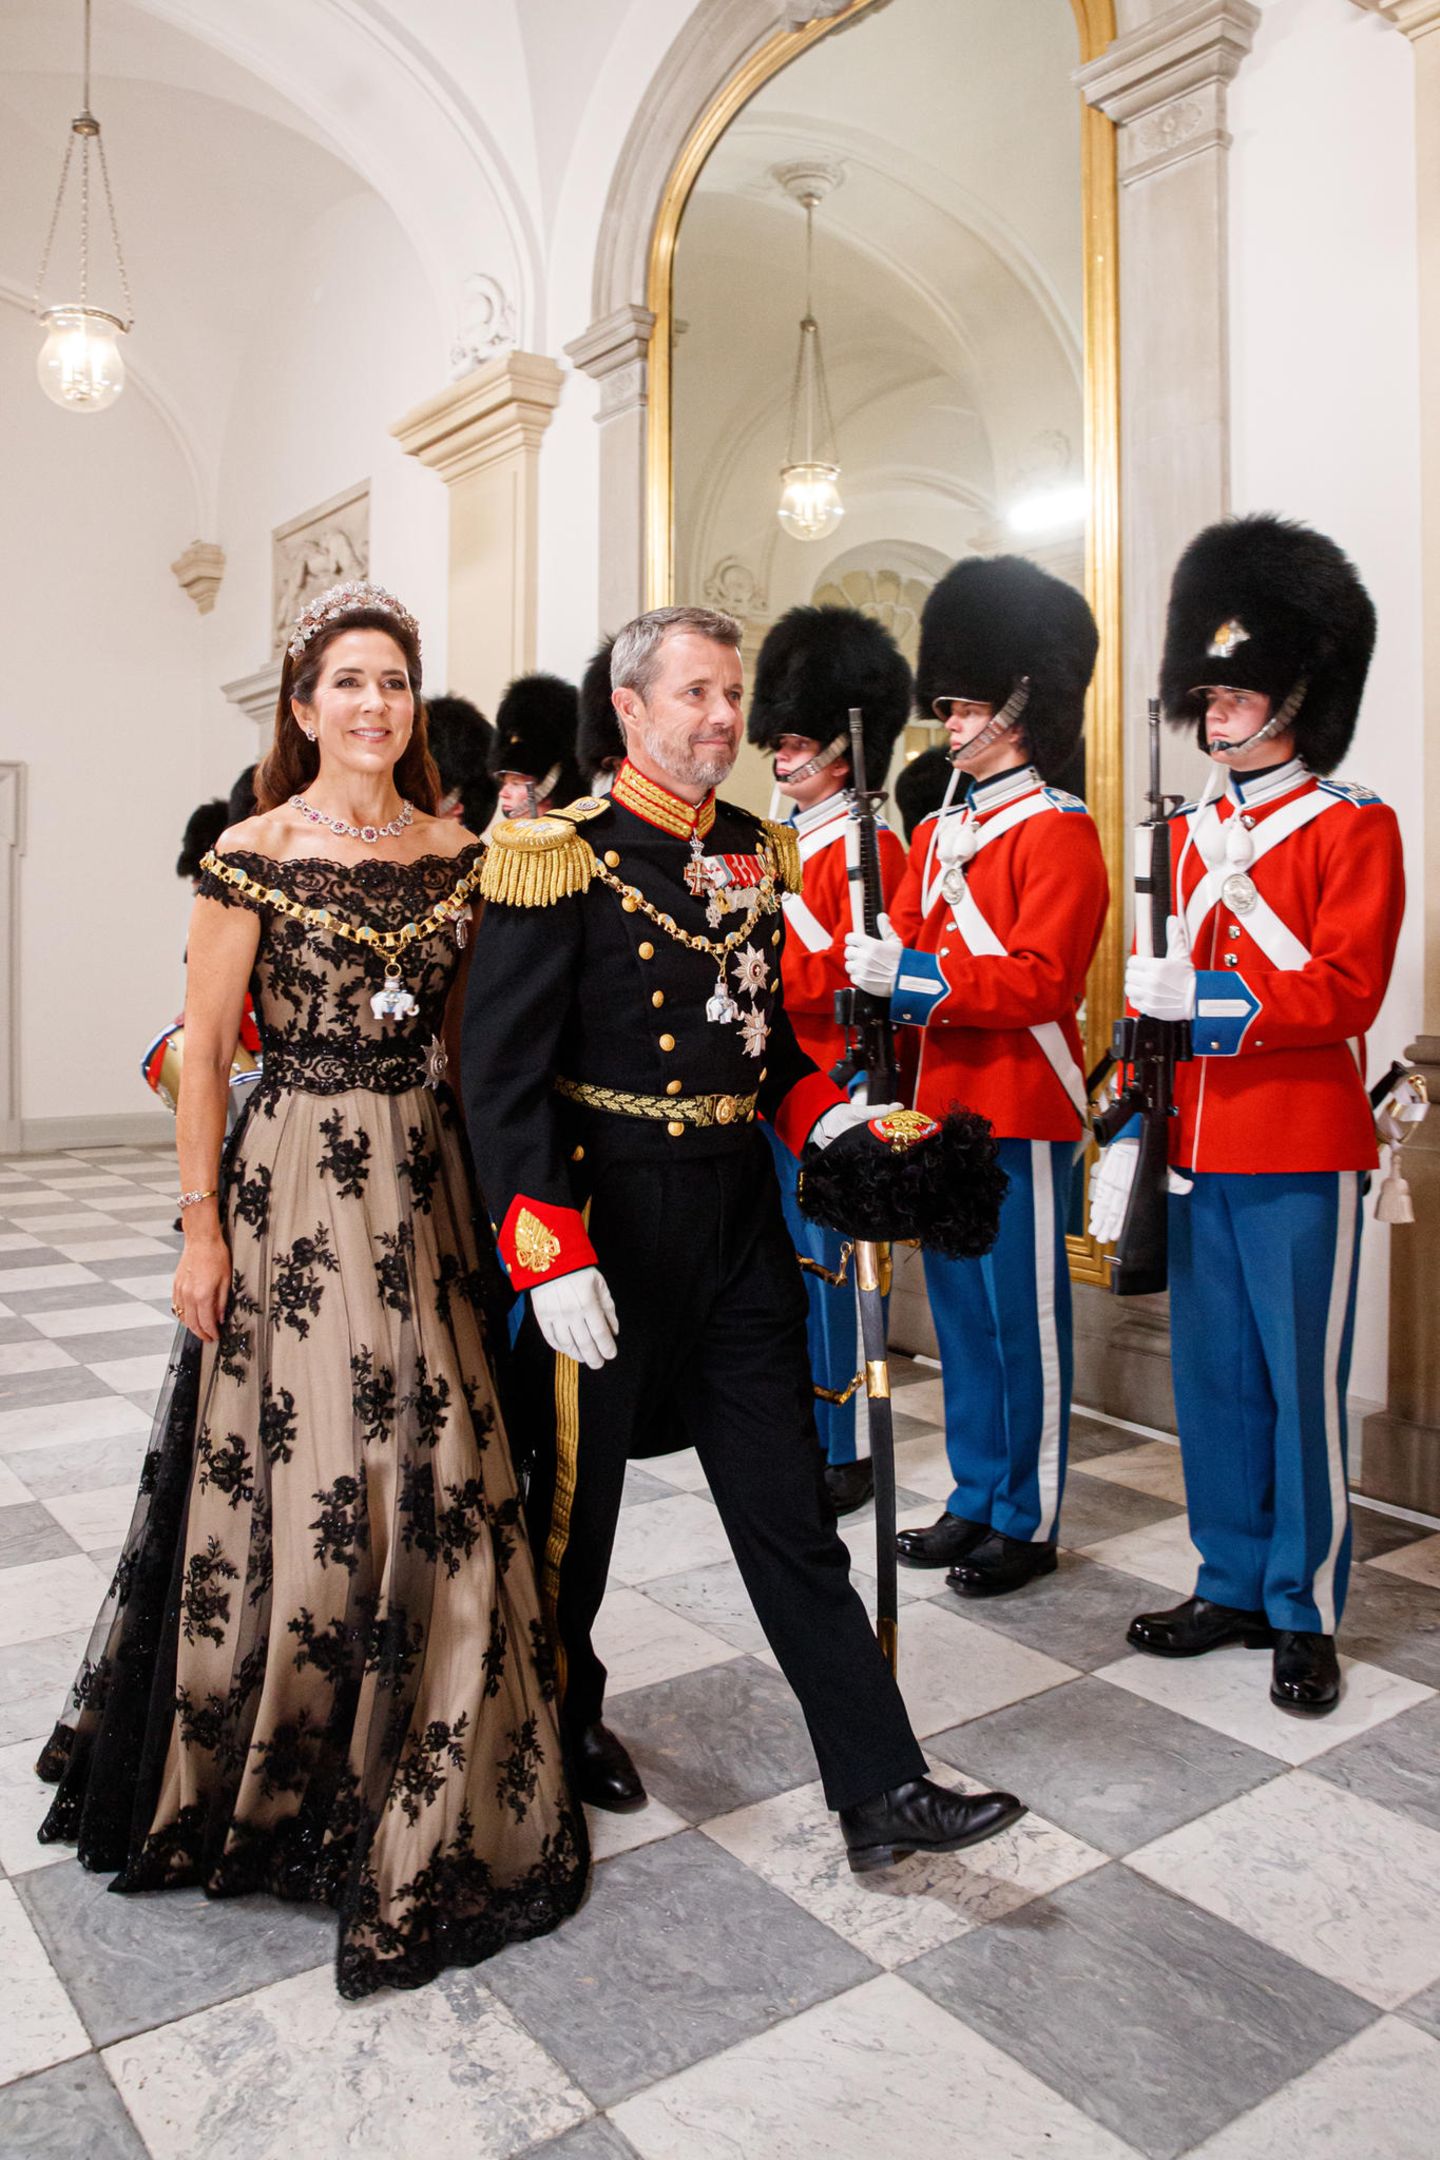 Am Abend des 11. Septembers steht dann das große Gala-Dinner auf Schloss Christiansborg an, für das sich nicht nur Prinzessin Mary im glamourösen Spitzenkleid und Prinz Frederik in Uniform mehr als feierlich gekleidet haben.